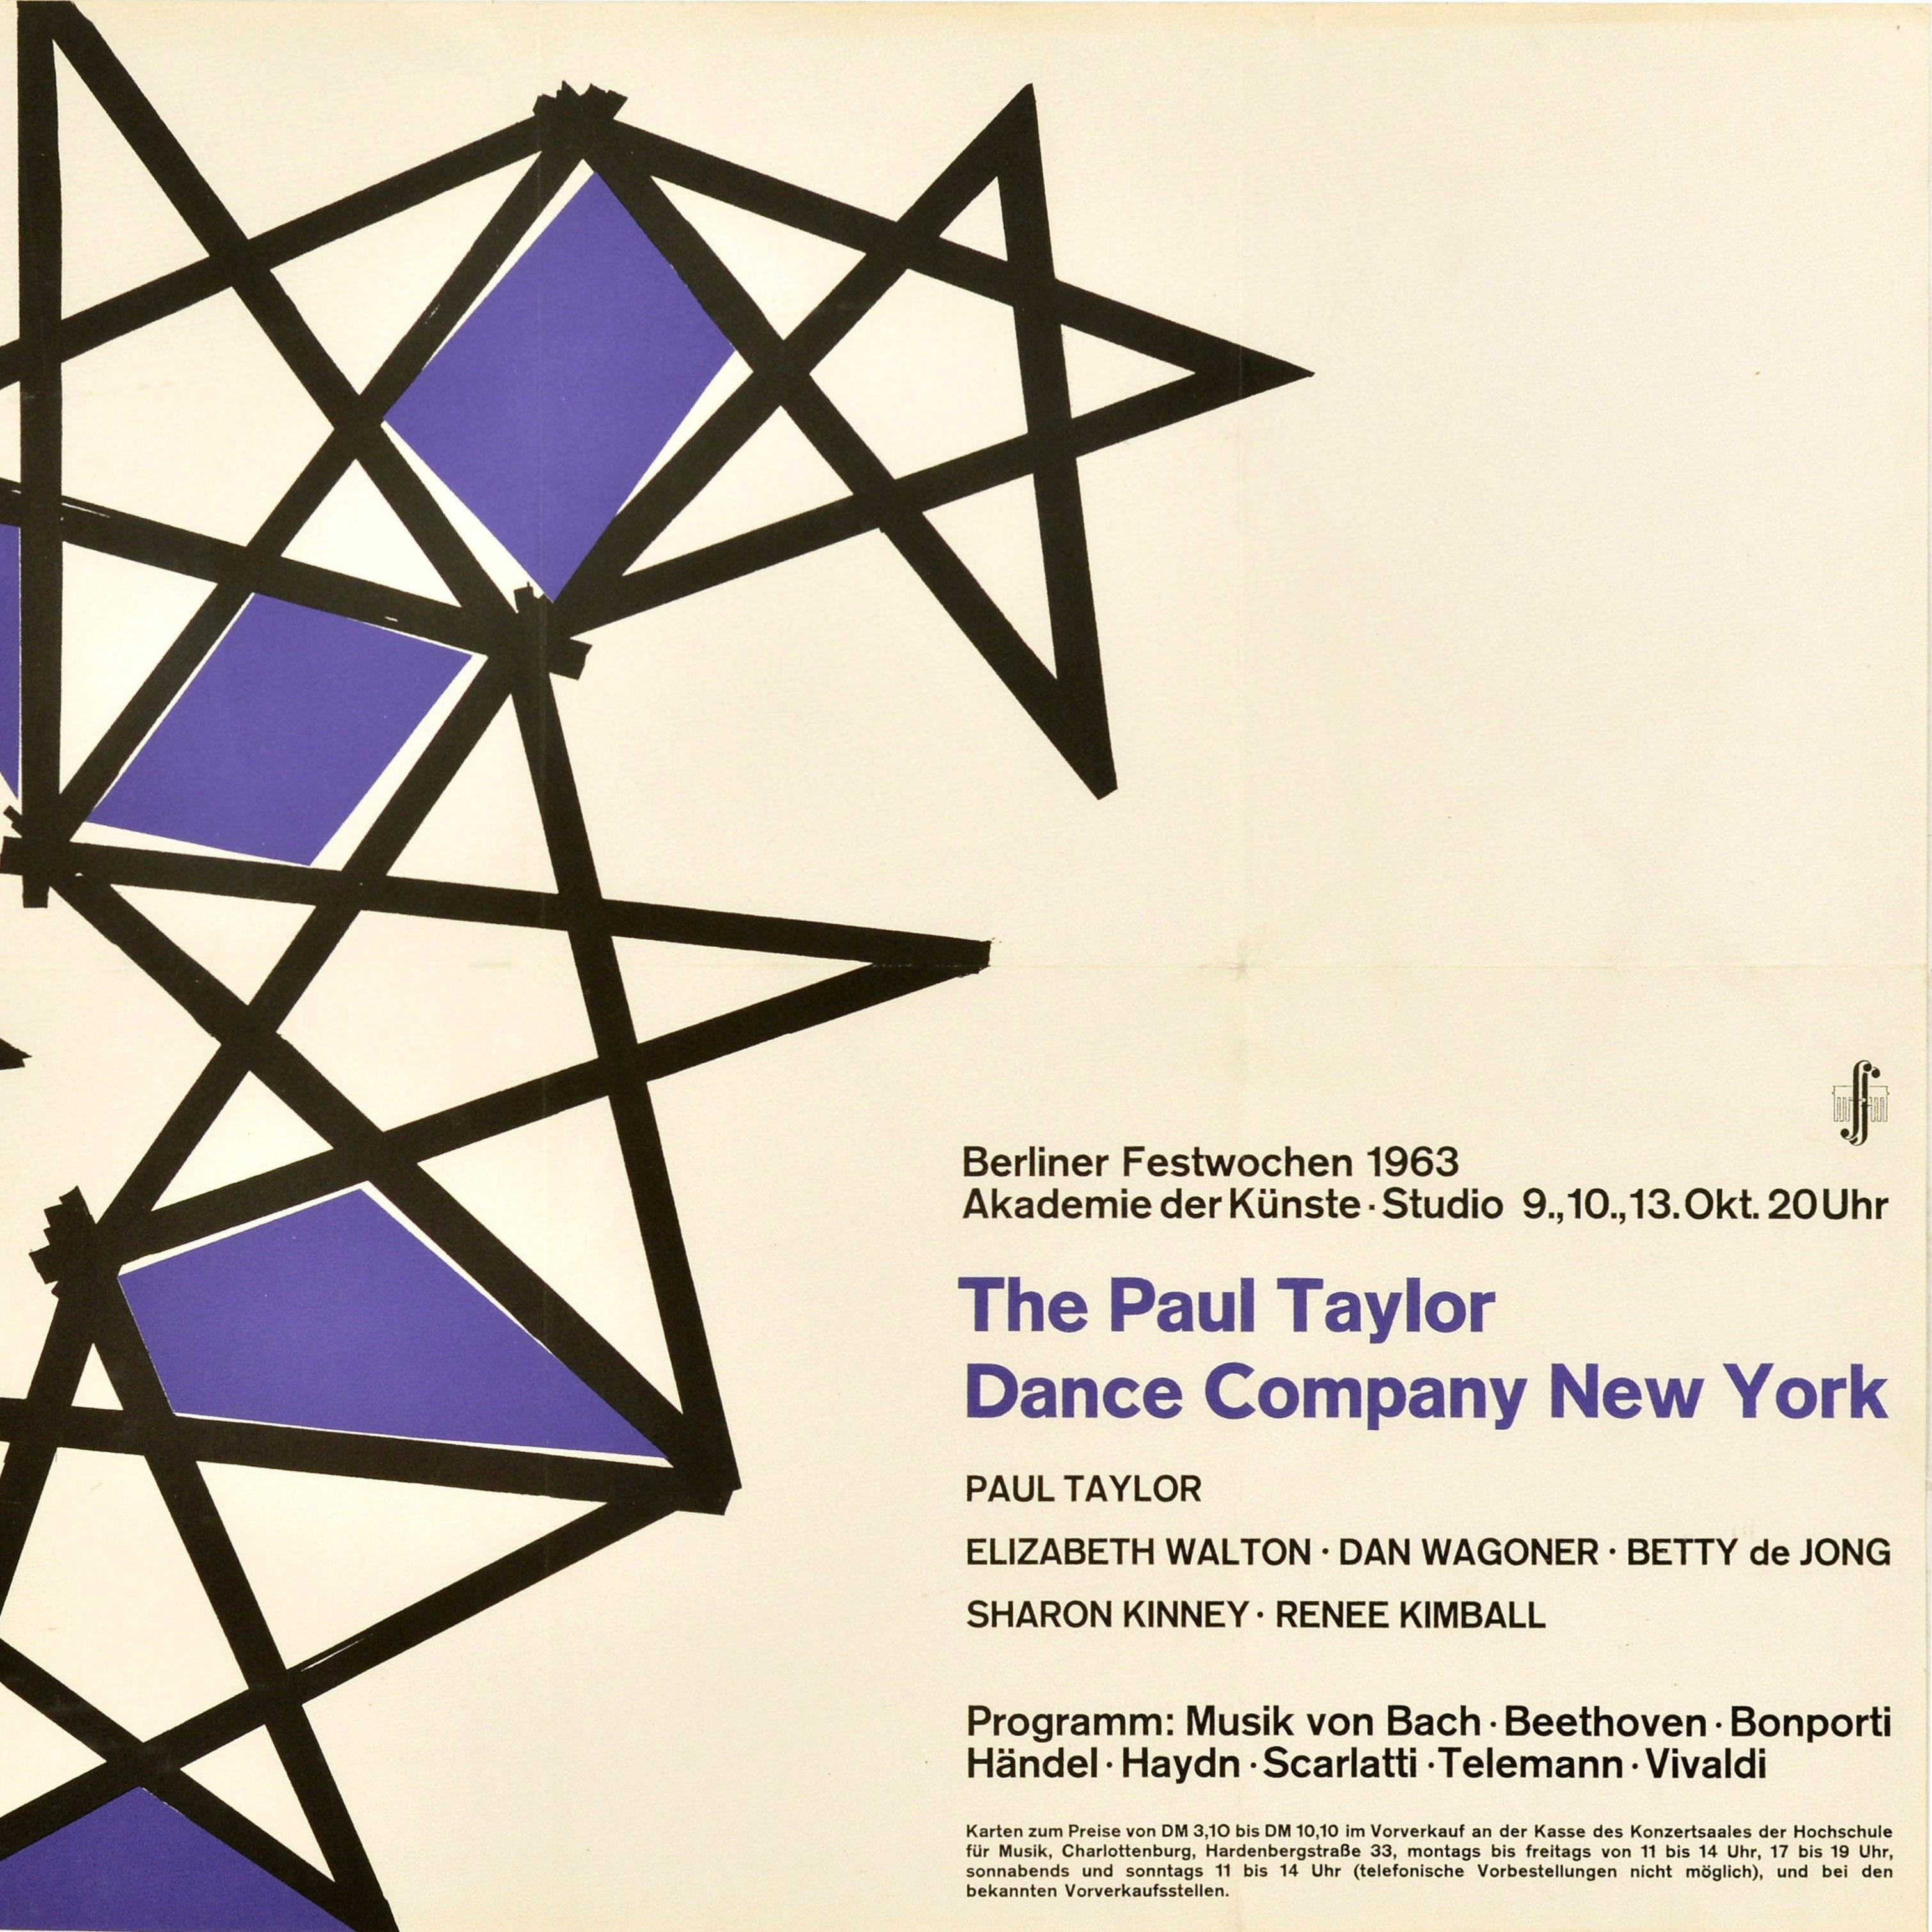 Original Vintage-Werbeplakat für eine Aufführung der Paul Taylor Dance Company New York im Studio der Akademie der Künste im Rahmen der Berliner Festwochen am 9., 10. und 13. Oktober 1963 - Berliner Festwochen 1963 Akademie der Kunst - mit schwarz